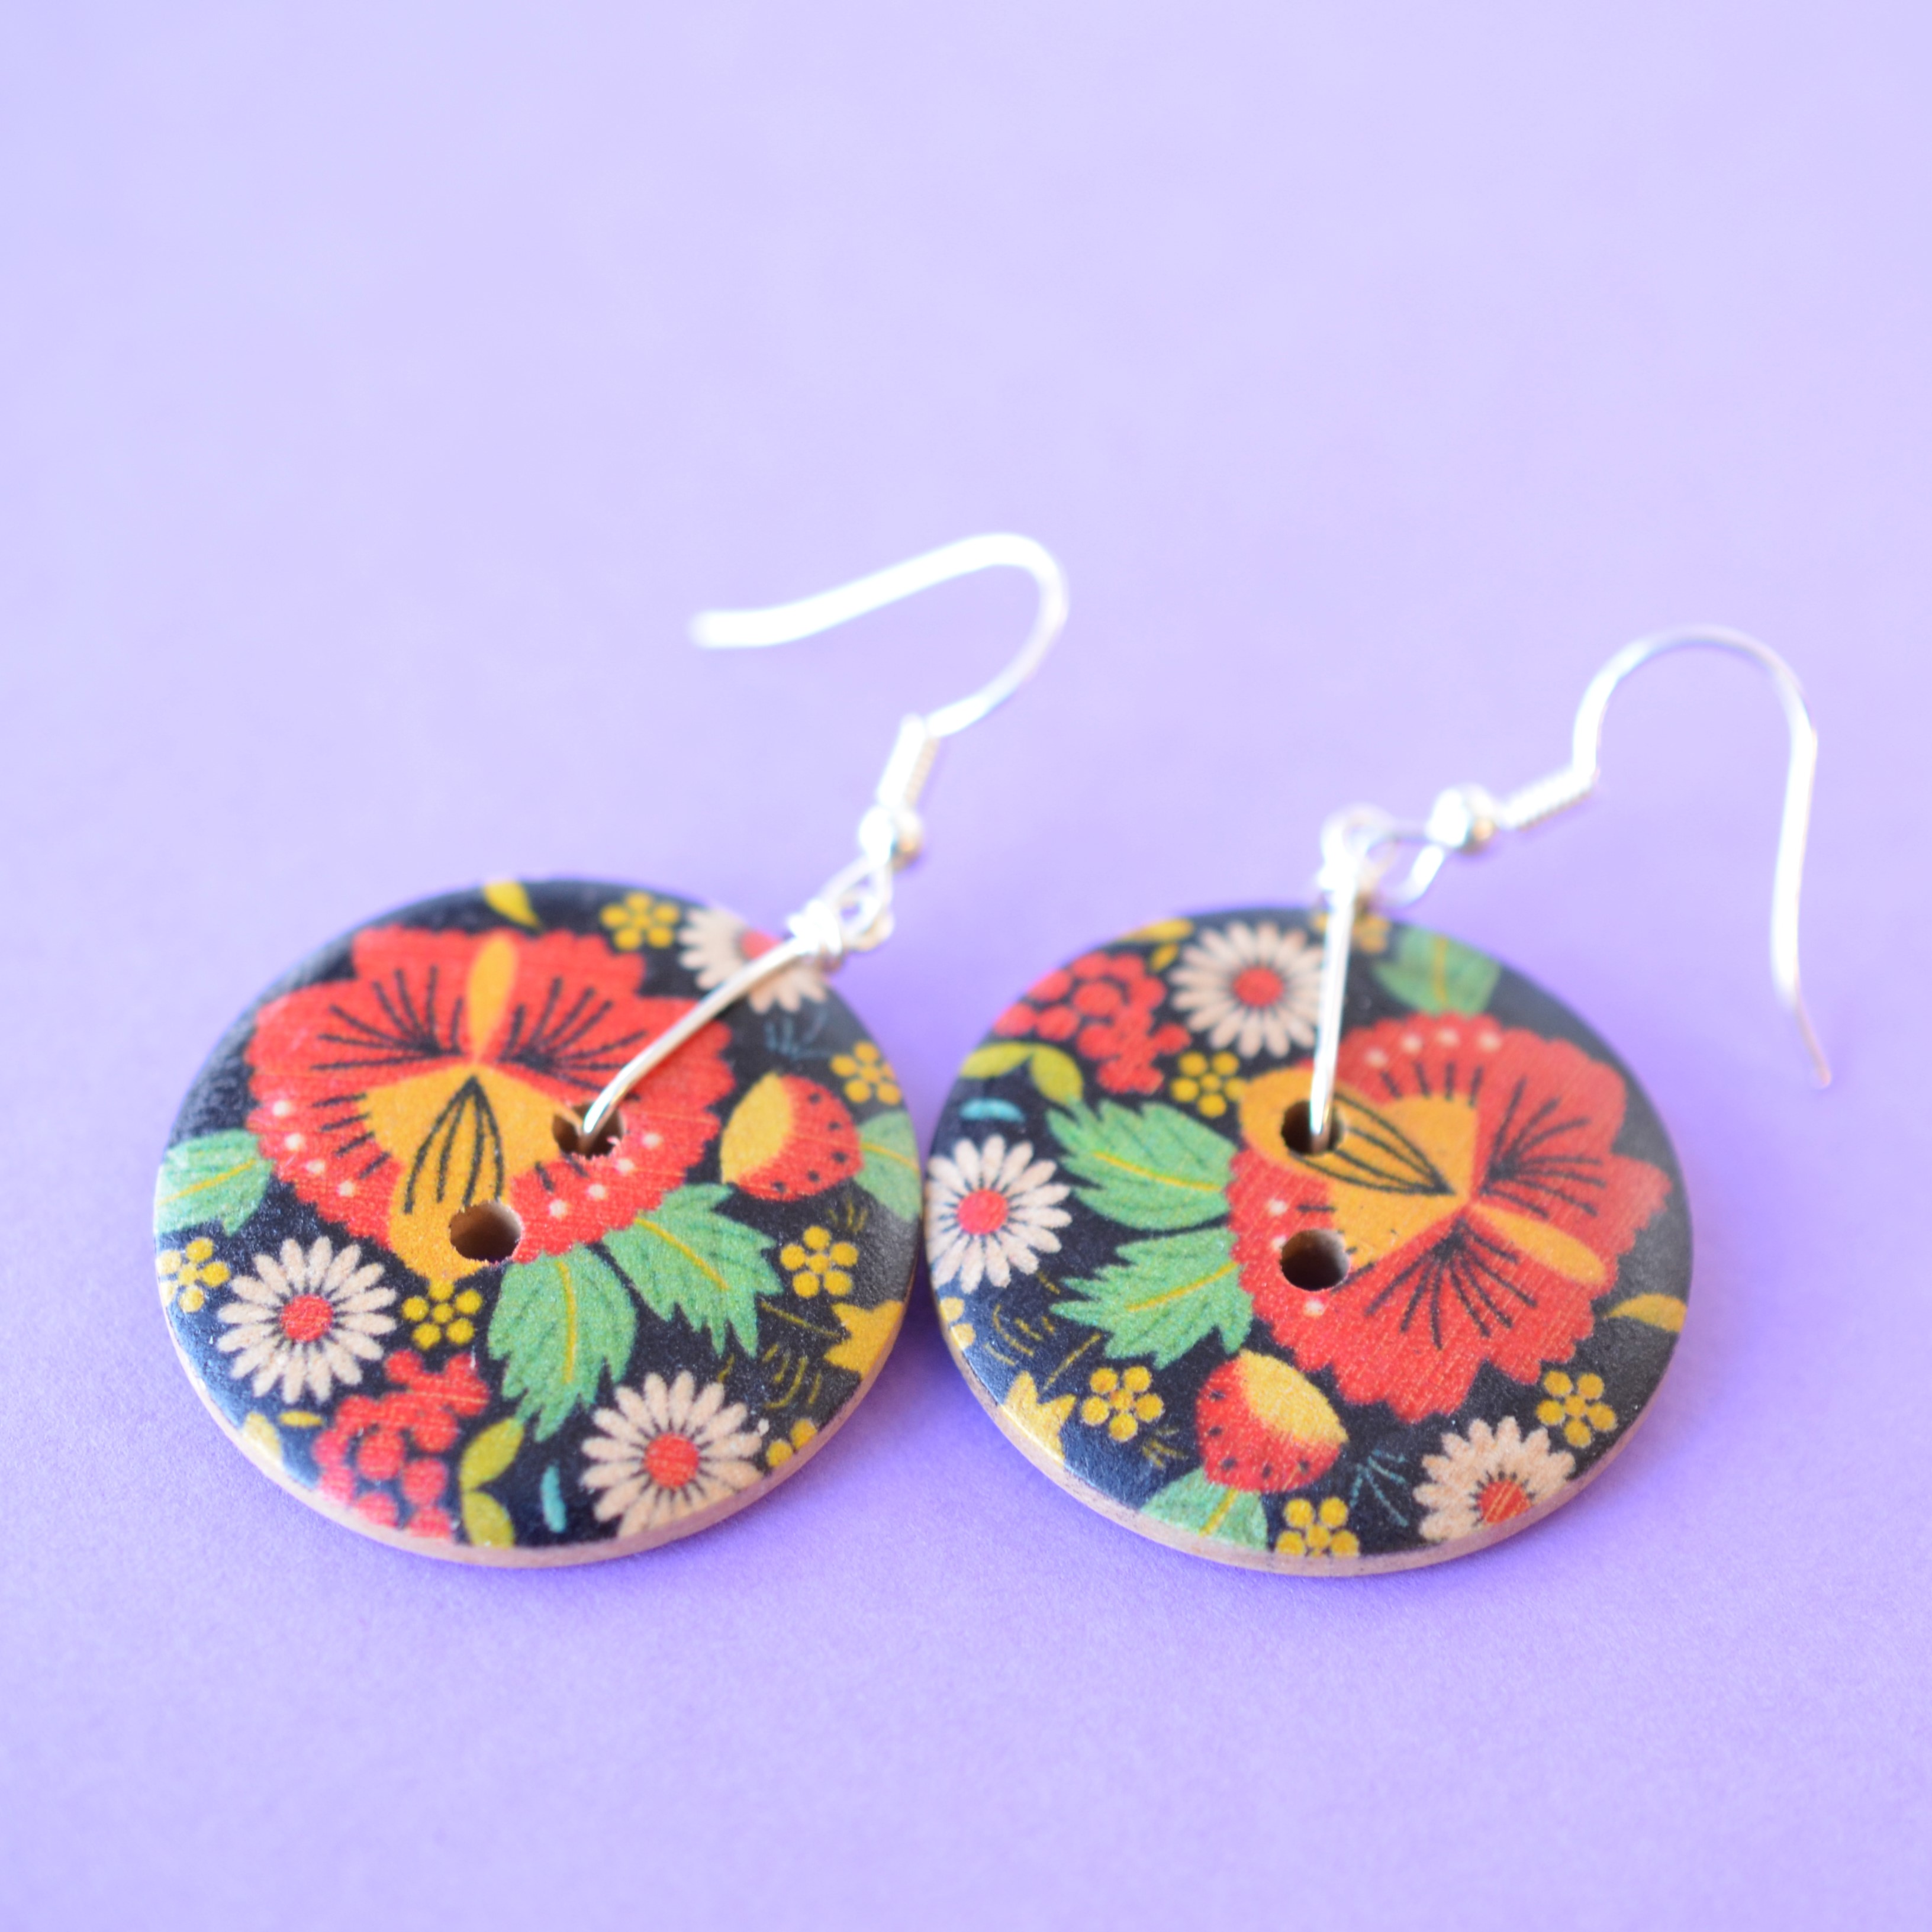 Floral Russian Folk Art Style Single Button Earrings